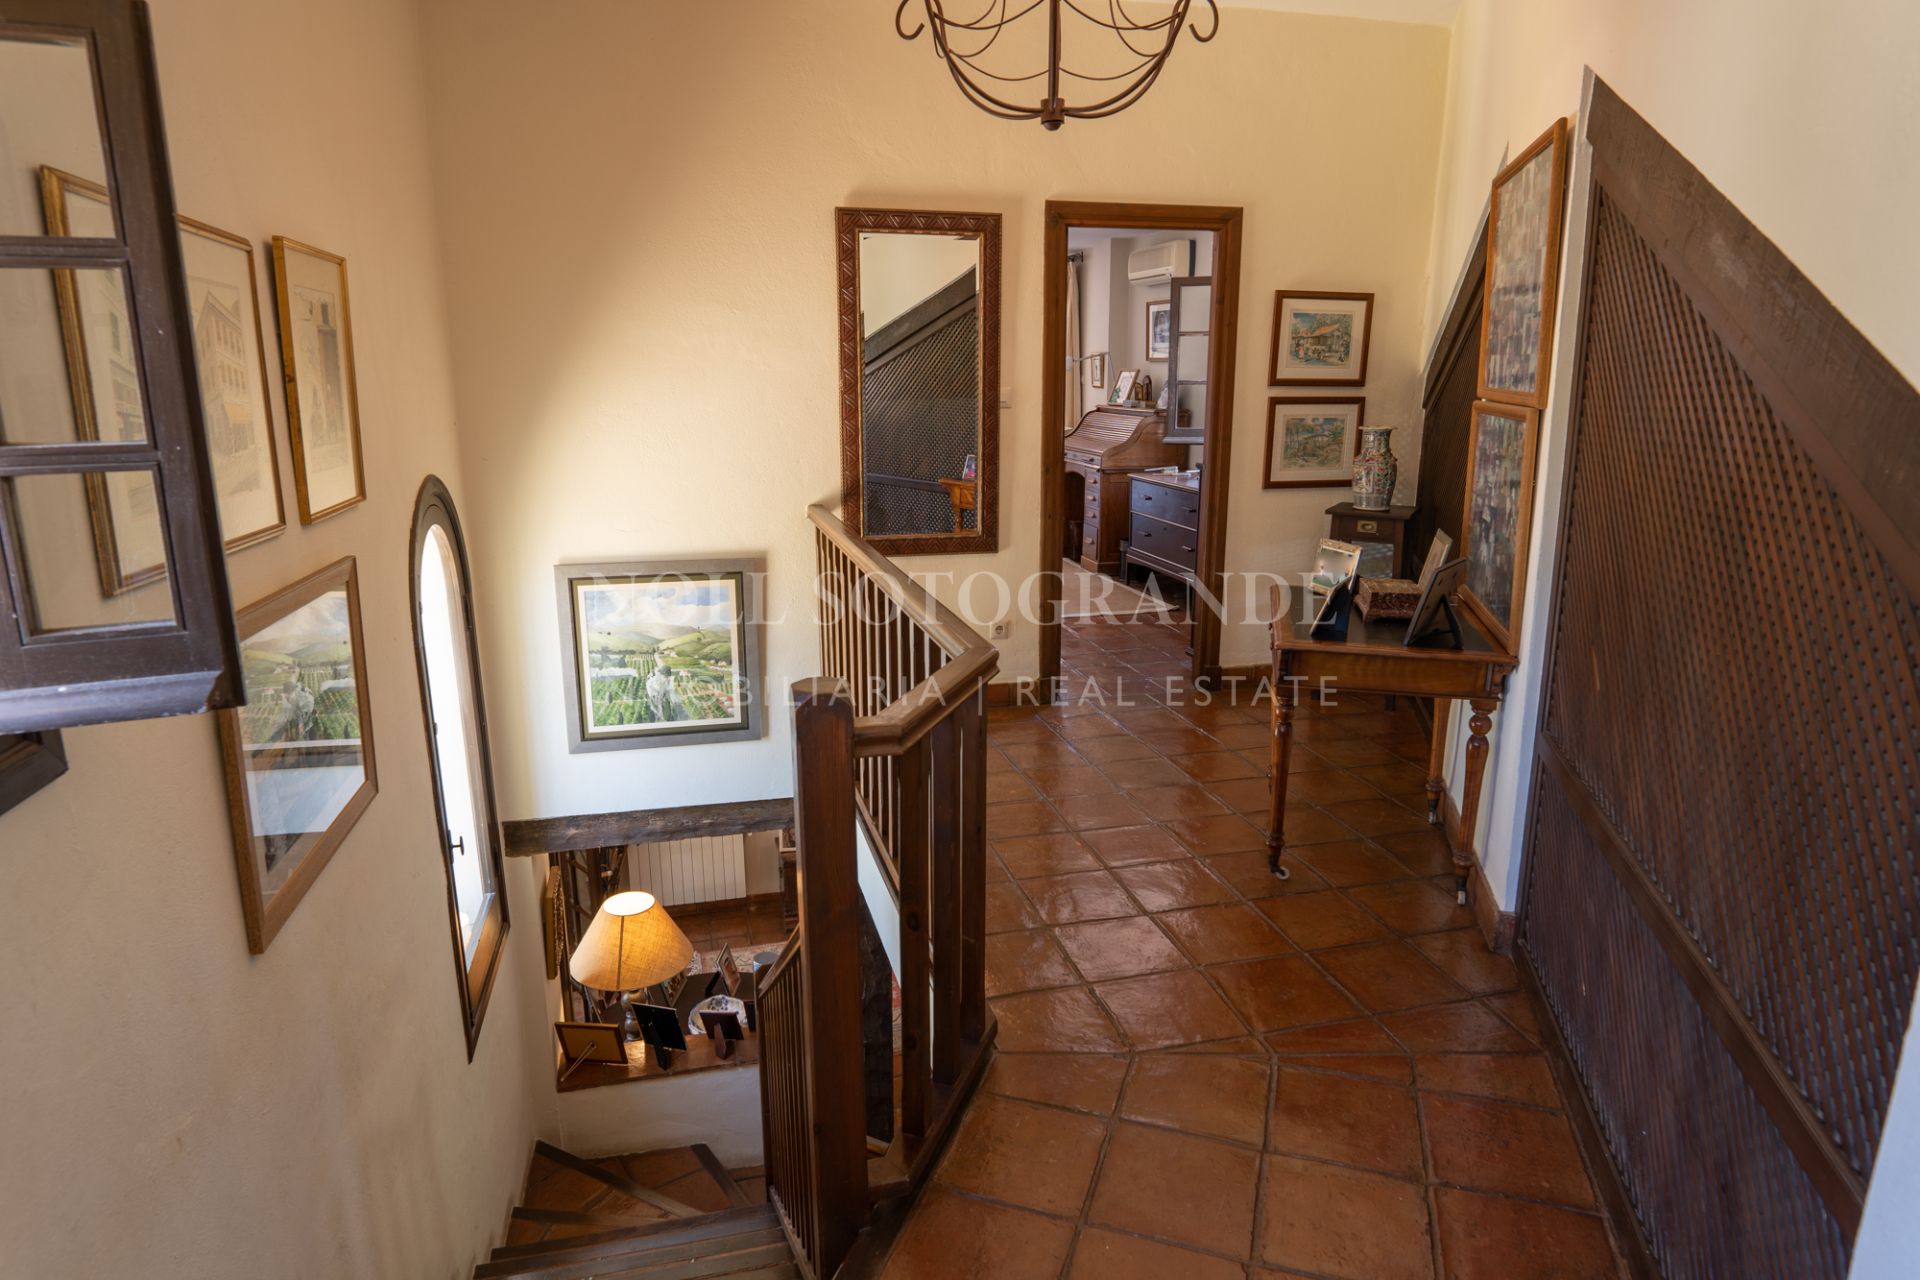 Traditional Cortijo style Sotogrande Villa for sale